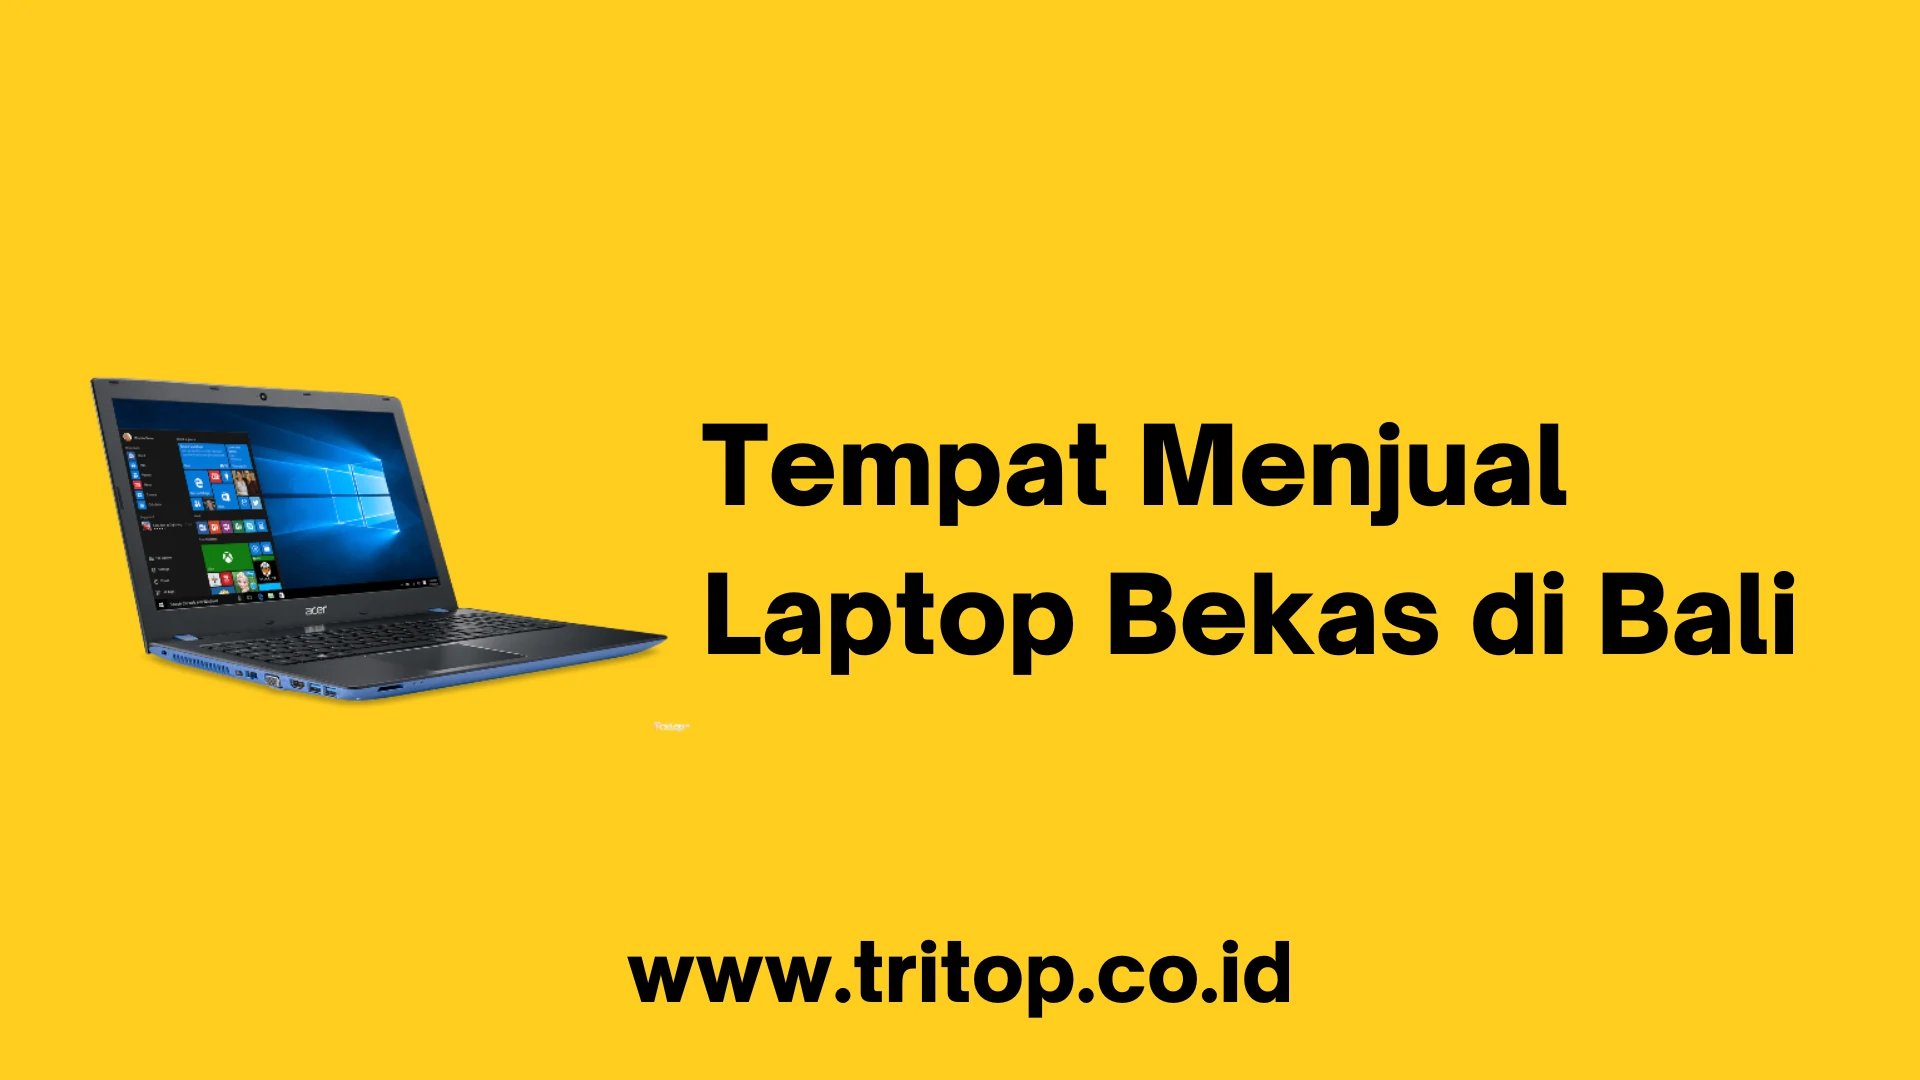 Tempat Menjual Laptop Bekas di Bali